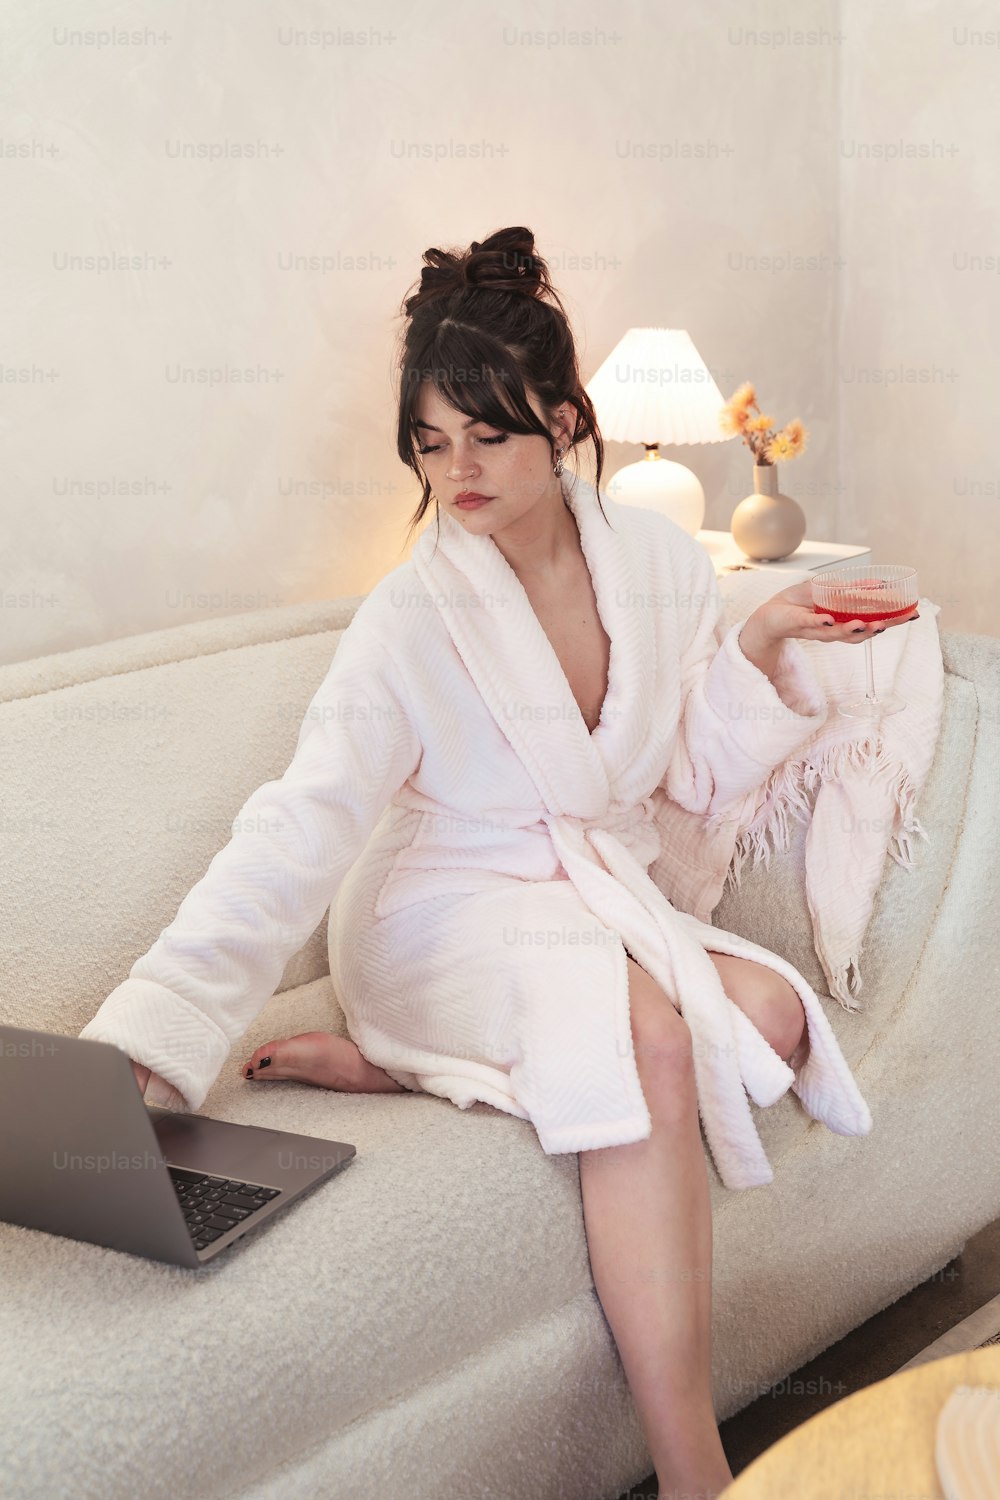 una mujer en bata de baño sentada en un sofá con una computadora portátil